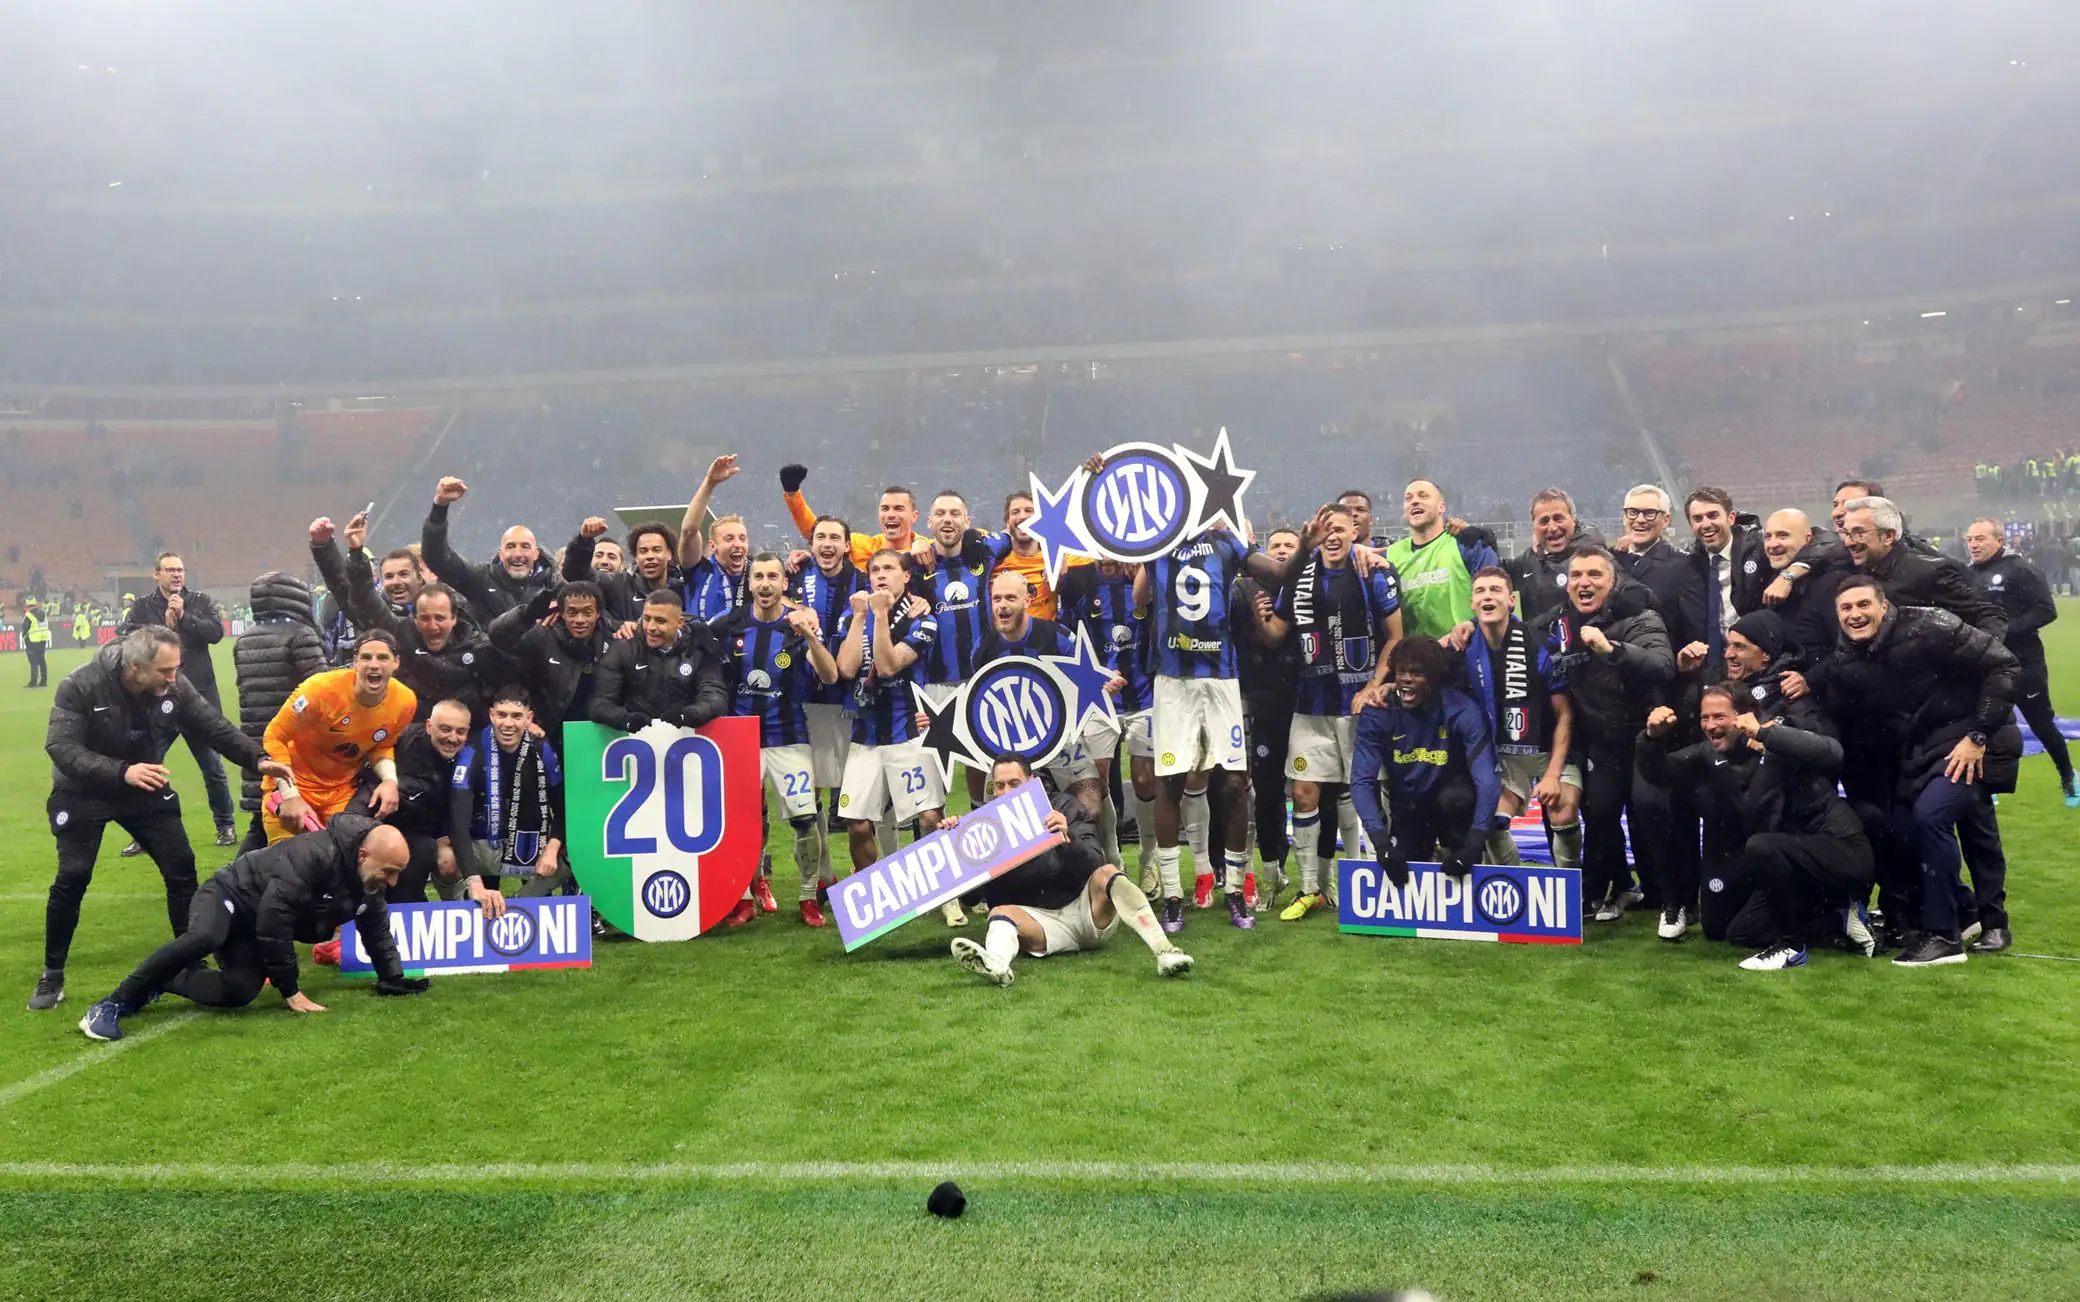 L'Inter è Campione d'Italia, i nerazzurri vincono il 20esimo Scudetto della loro storia